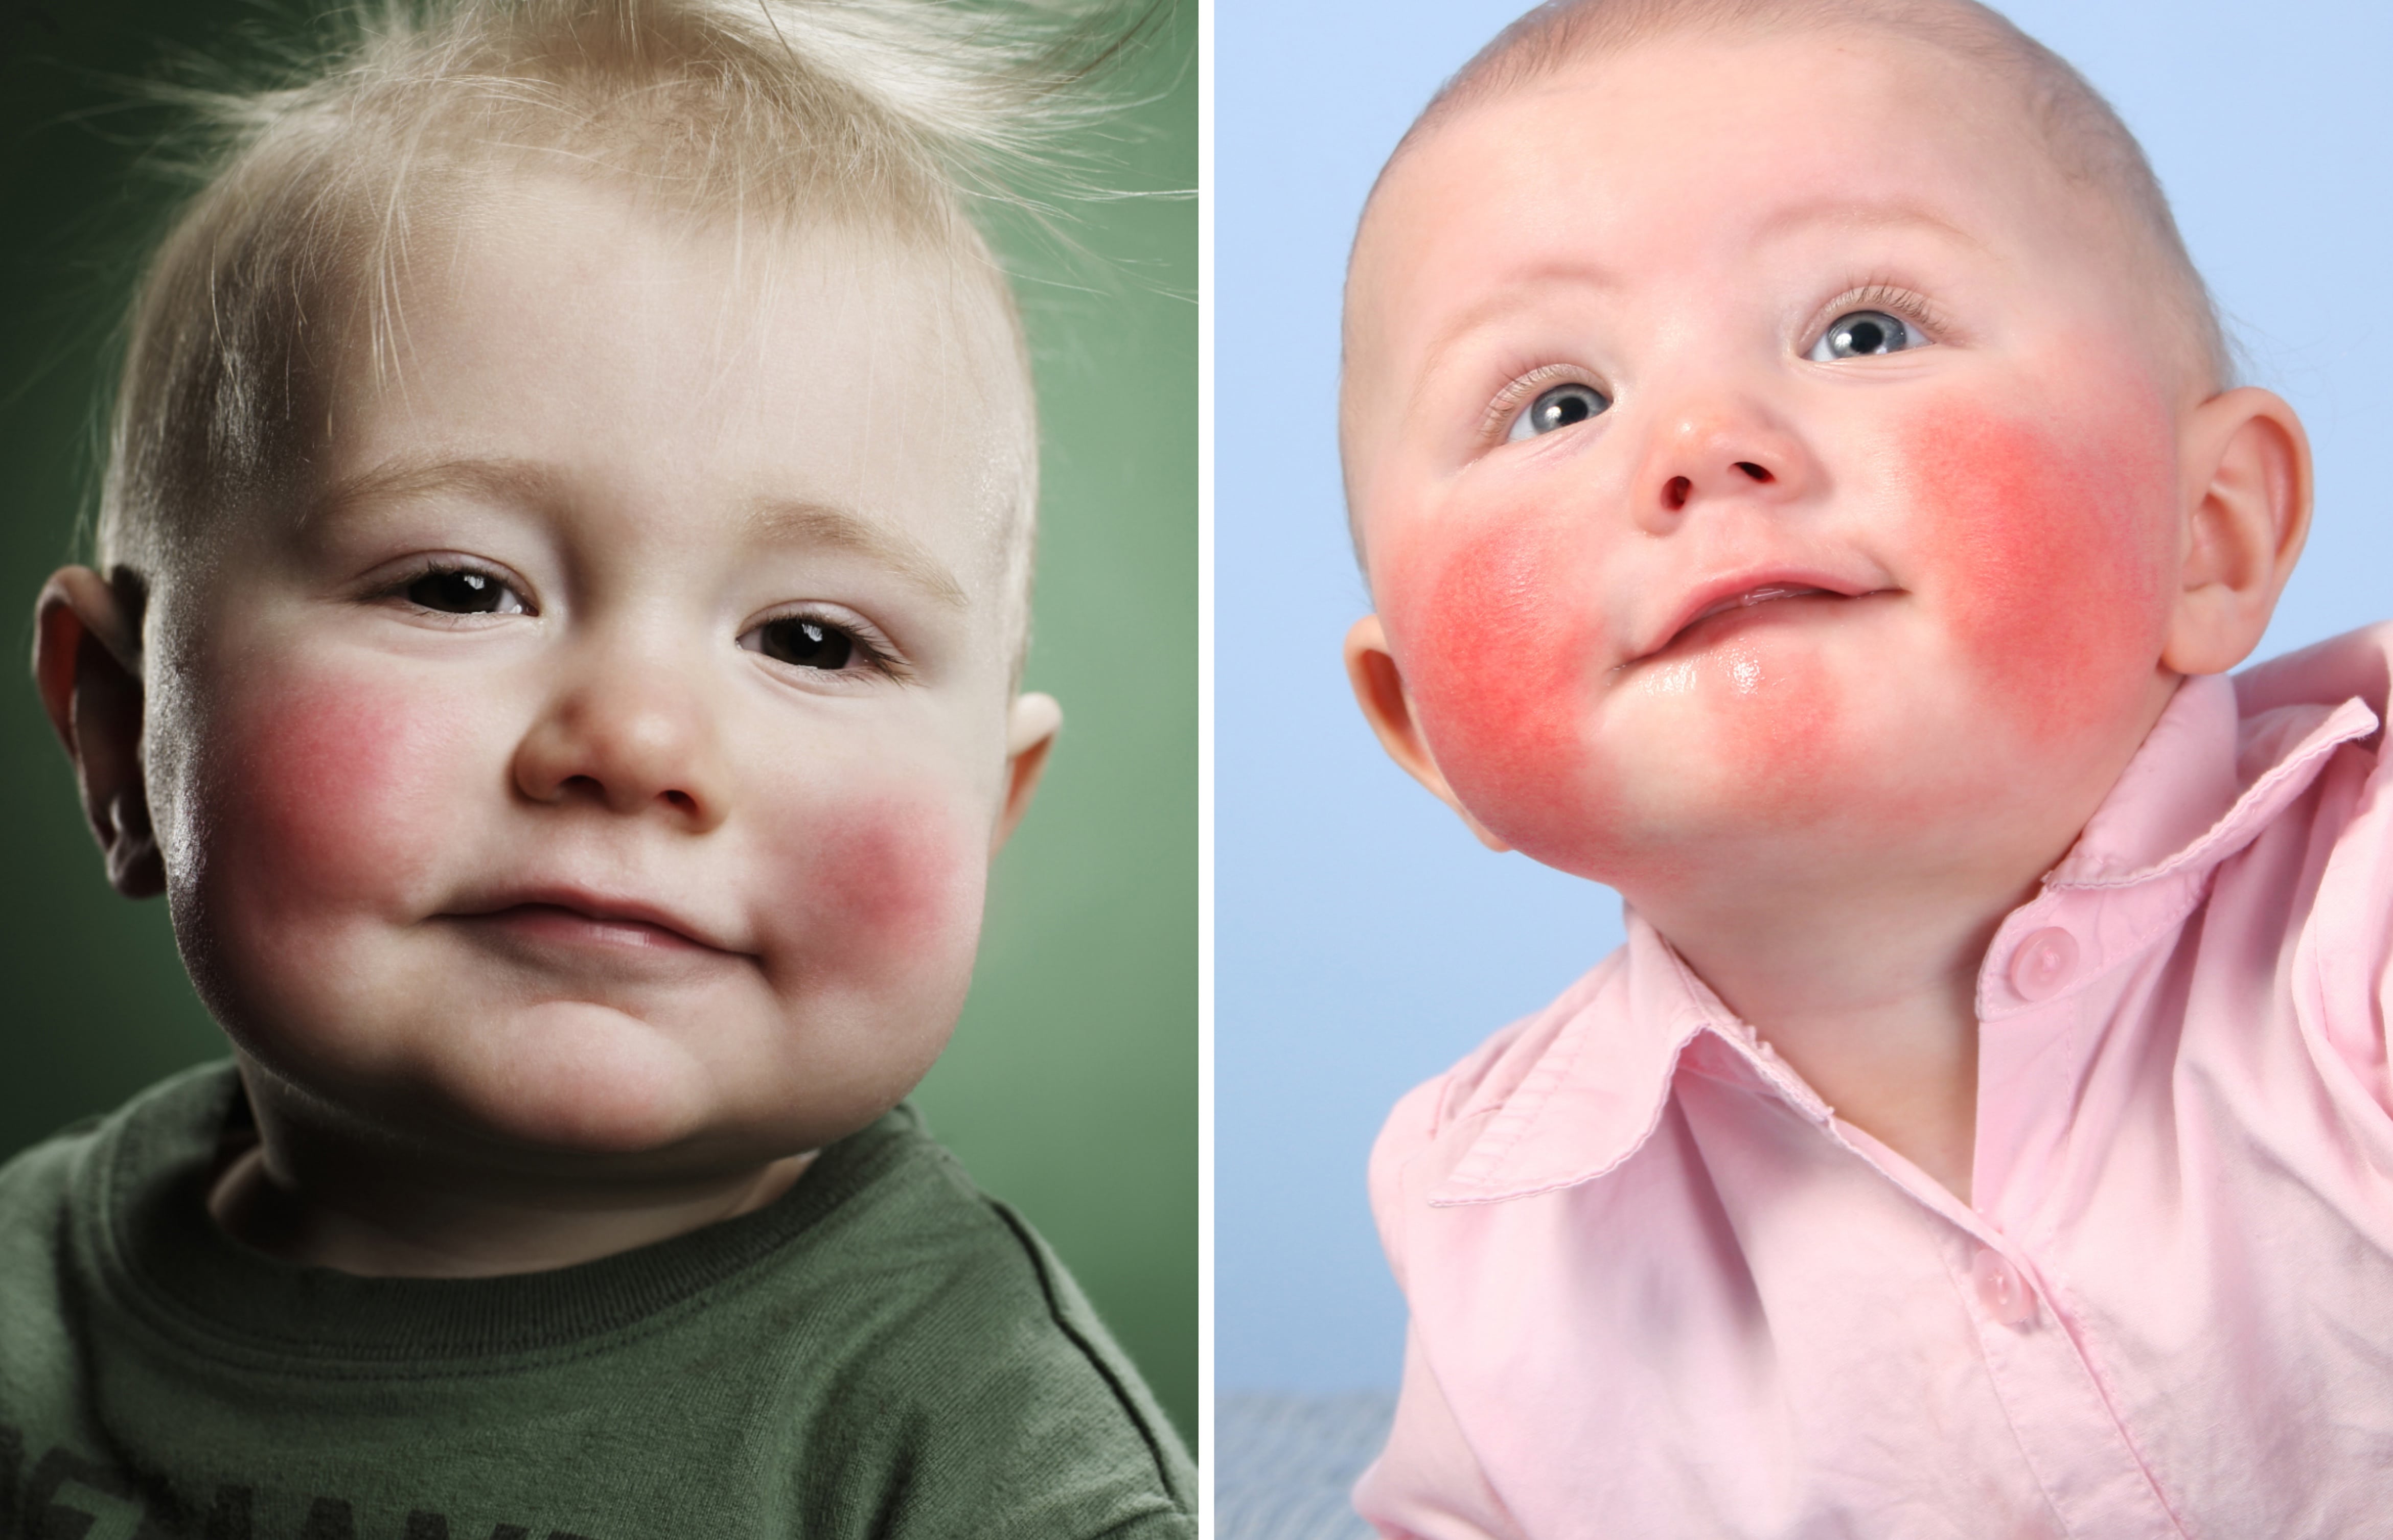 a03cba44085623928665f0f2f7fbafc7 Харчова алергія у дитини 1 року: симптоми, як проявляється і виглядає на обличчі, лікування, дієта, профілактика